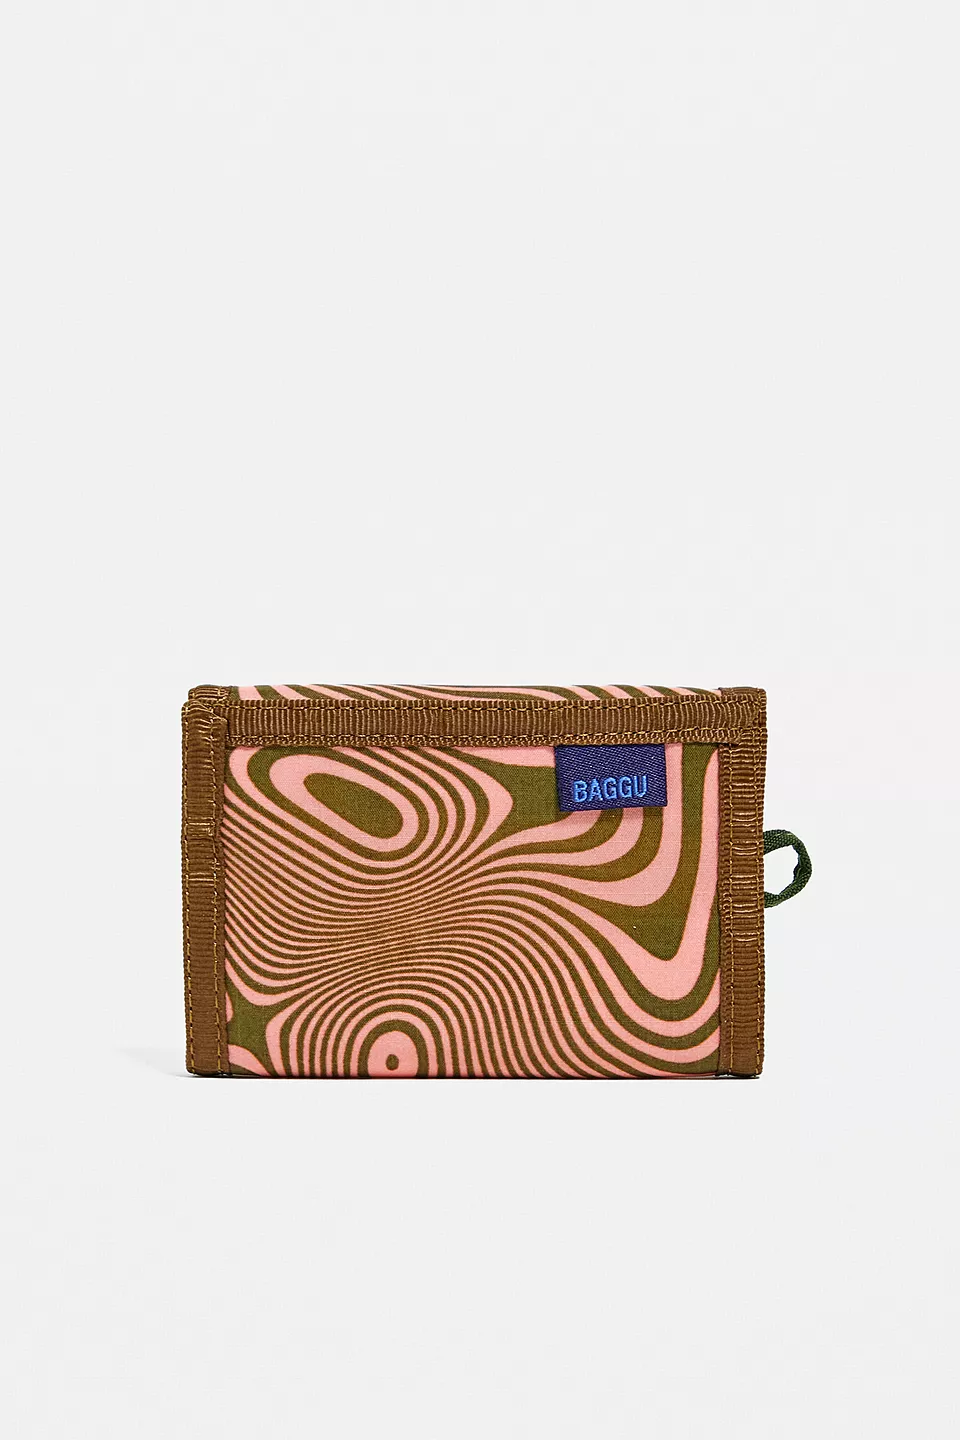 urbanoutfitters.com | BAGGU – Nylon-Brieftasche in Lachsrosa mit psychedelischem Wirbelprint